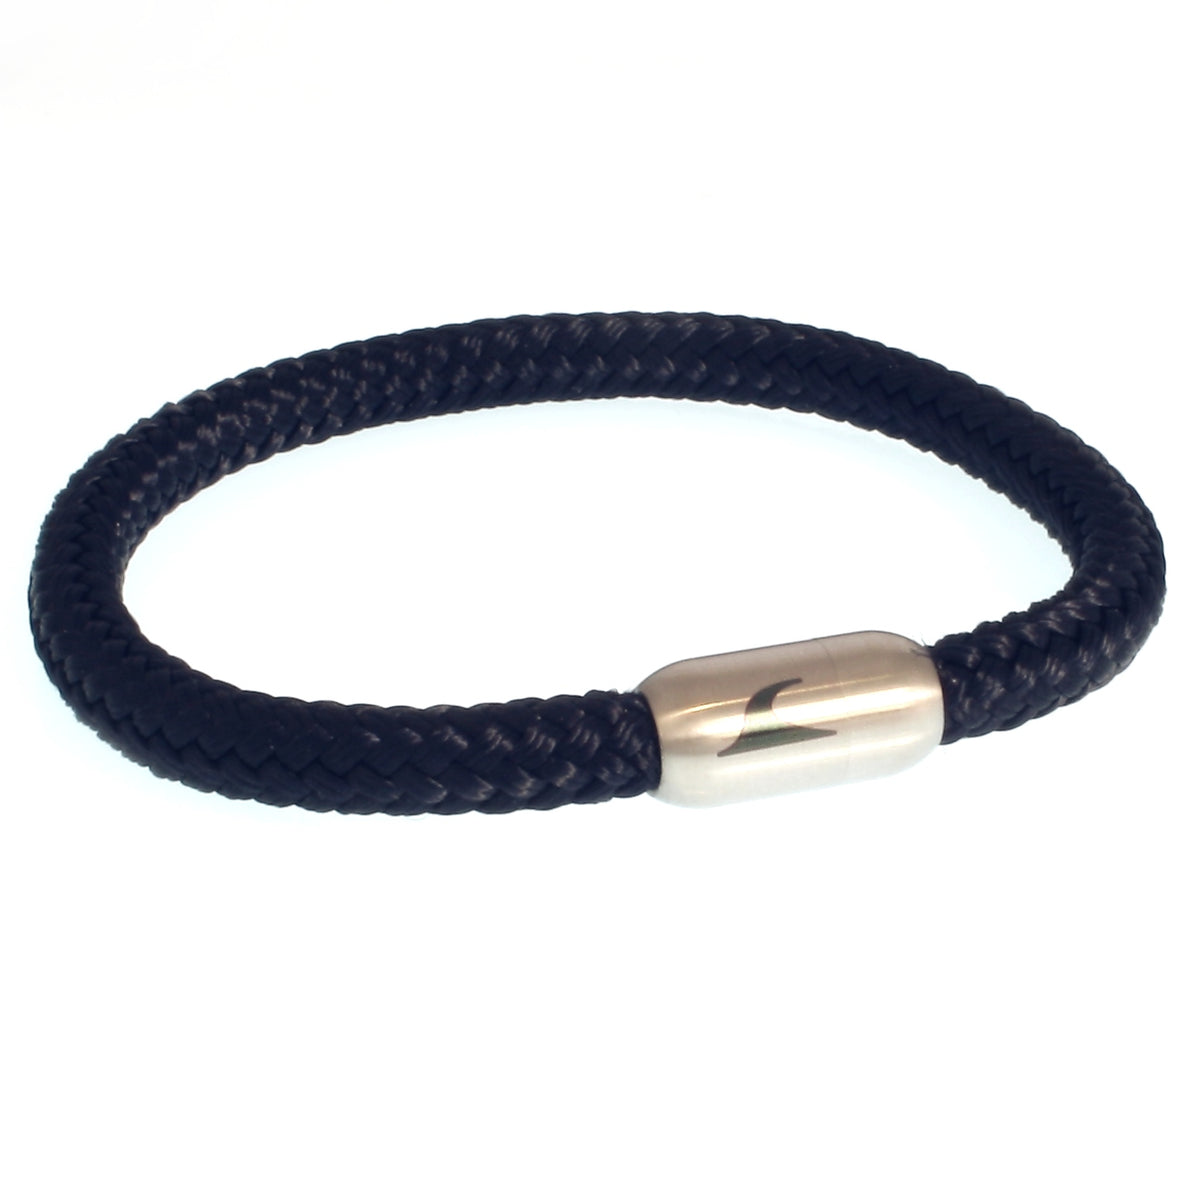 Herren-segeltau-armband-damen-sylt-nachtblau-marine-silber-geflochten-Edelstahlverschluss-vorn-wavepirate-shop-st